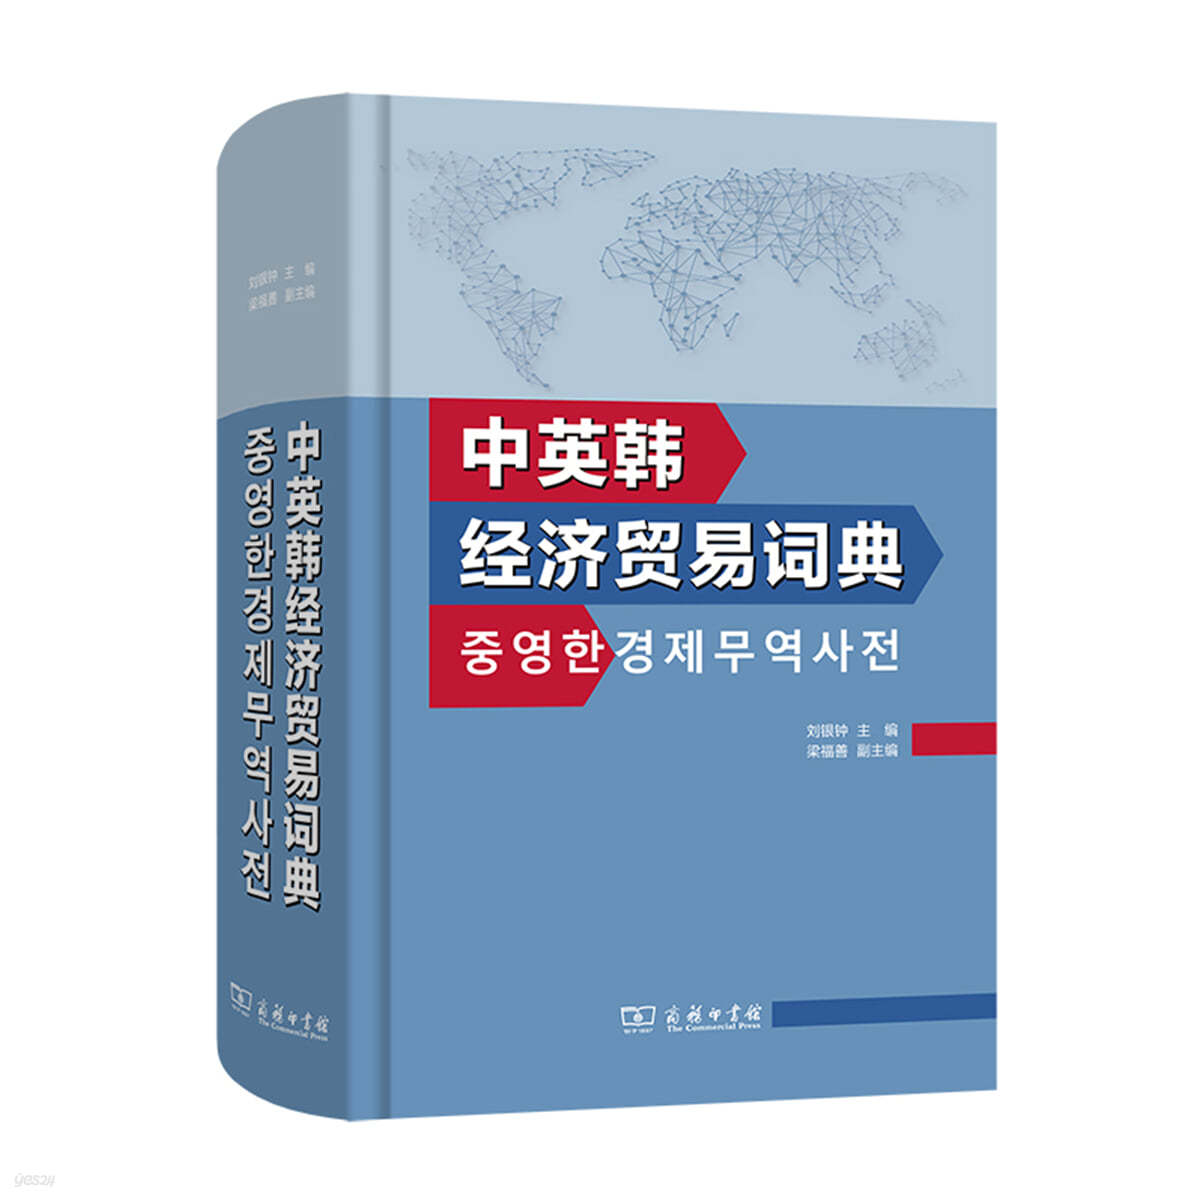 중영한경제무역사전 中英韓經濟貿易詞典